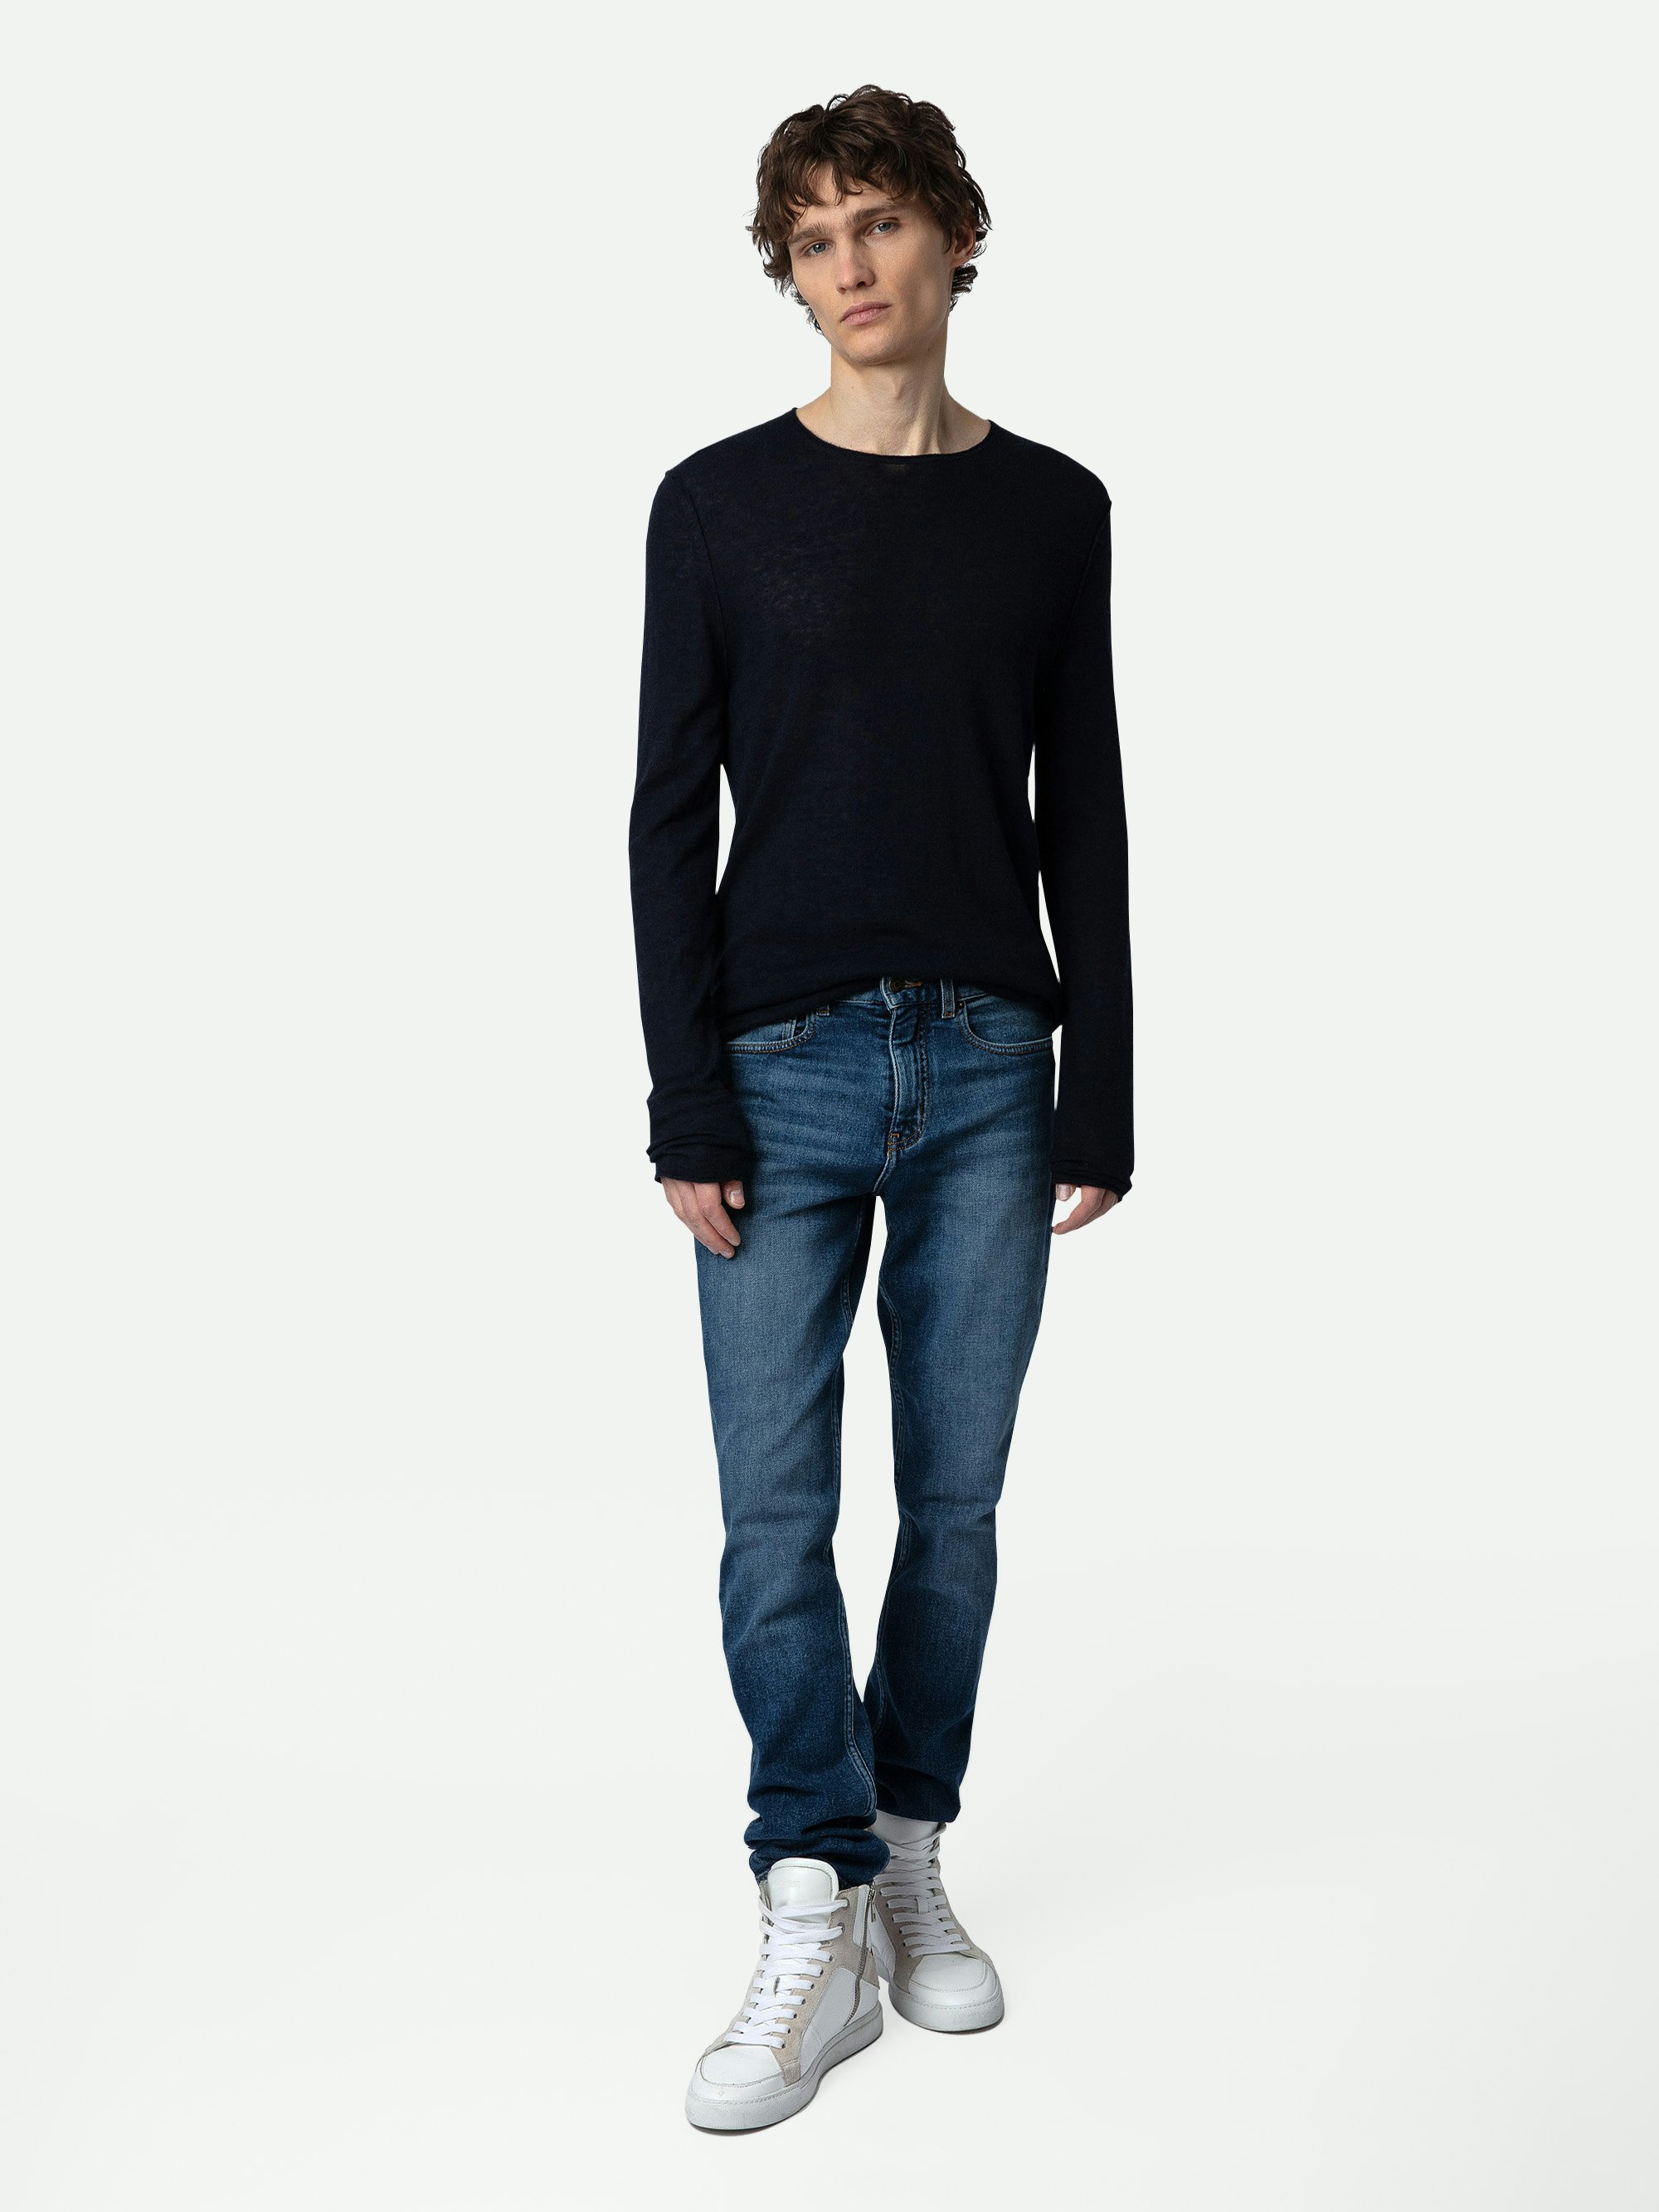 Teiss Cachemire Jumper - Round-neck 100% cashmere sweater.